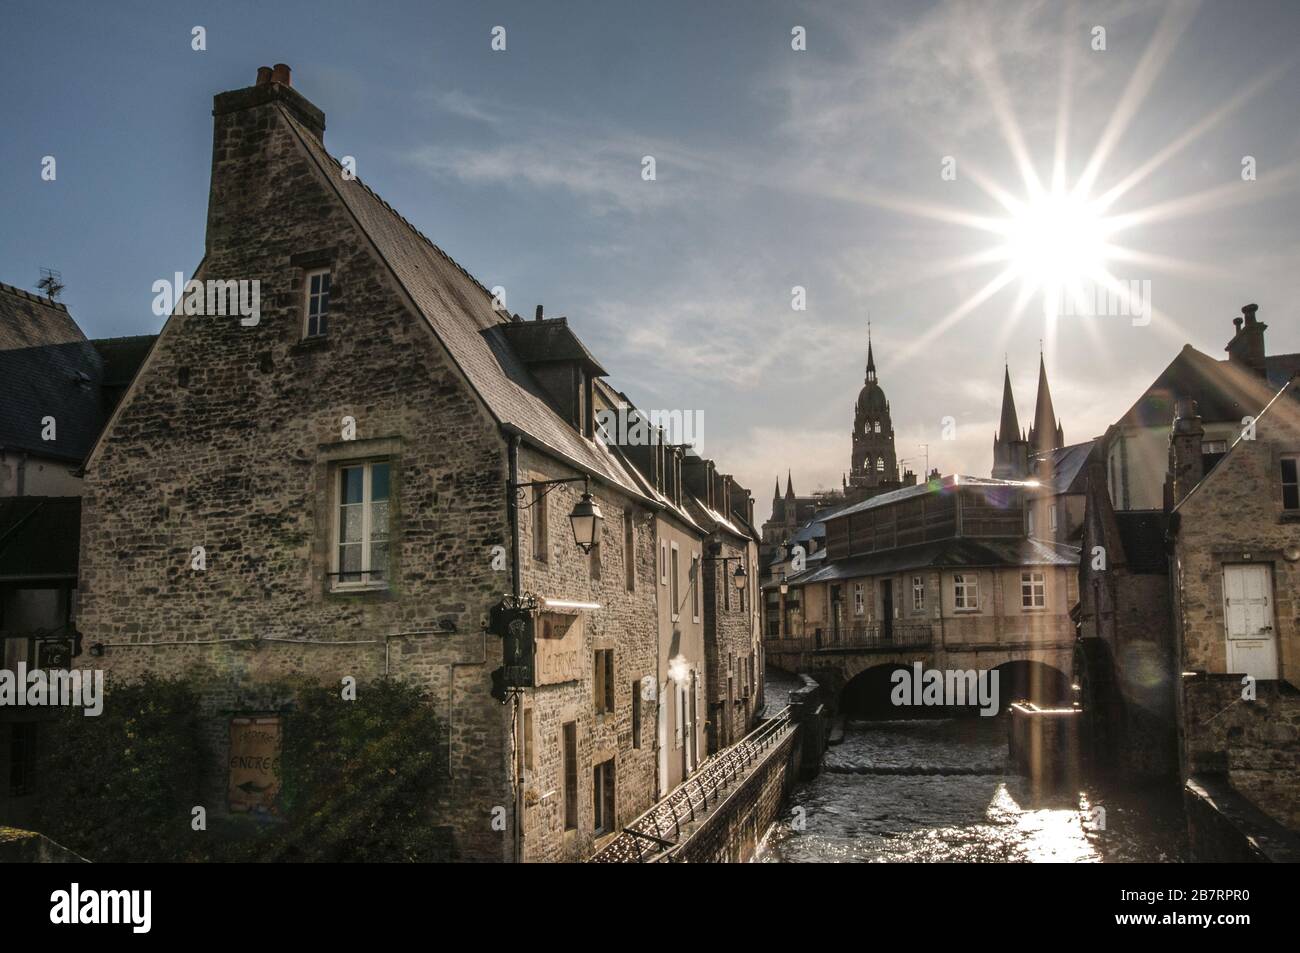 Vieille ville de Bayeux avec la rivière Aure, en arrière-plan les tours de la cathédrale de la Nortre Dame de Bayeux, département du Calvados, Normandie, France Banque D'Images